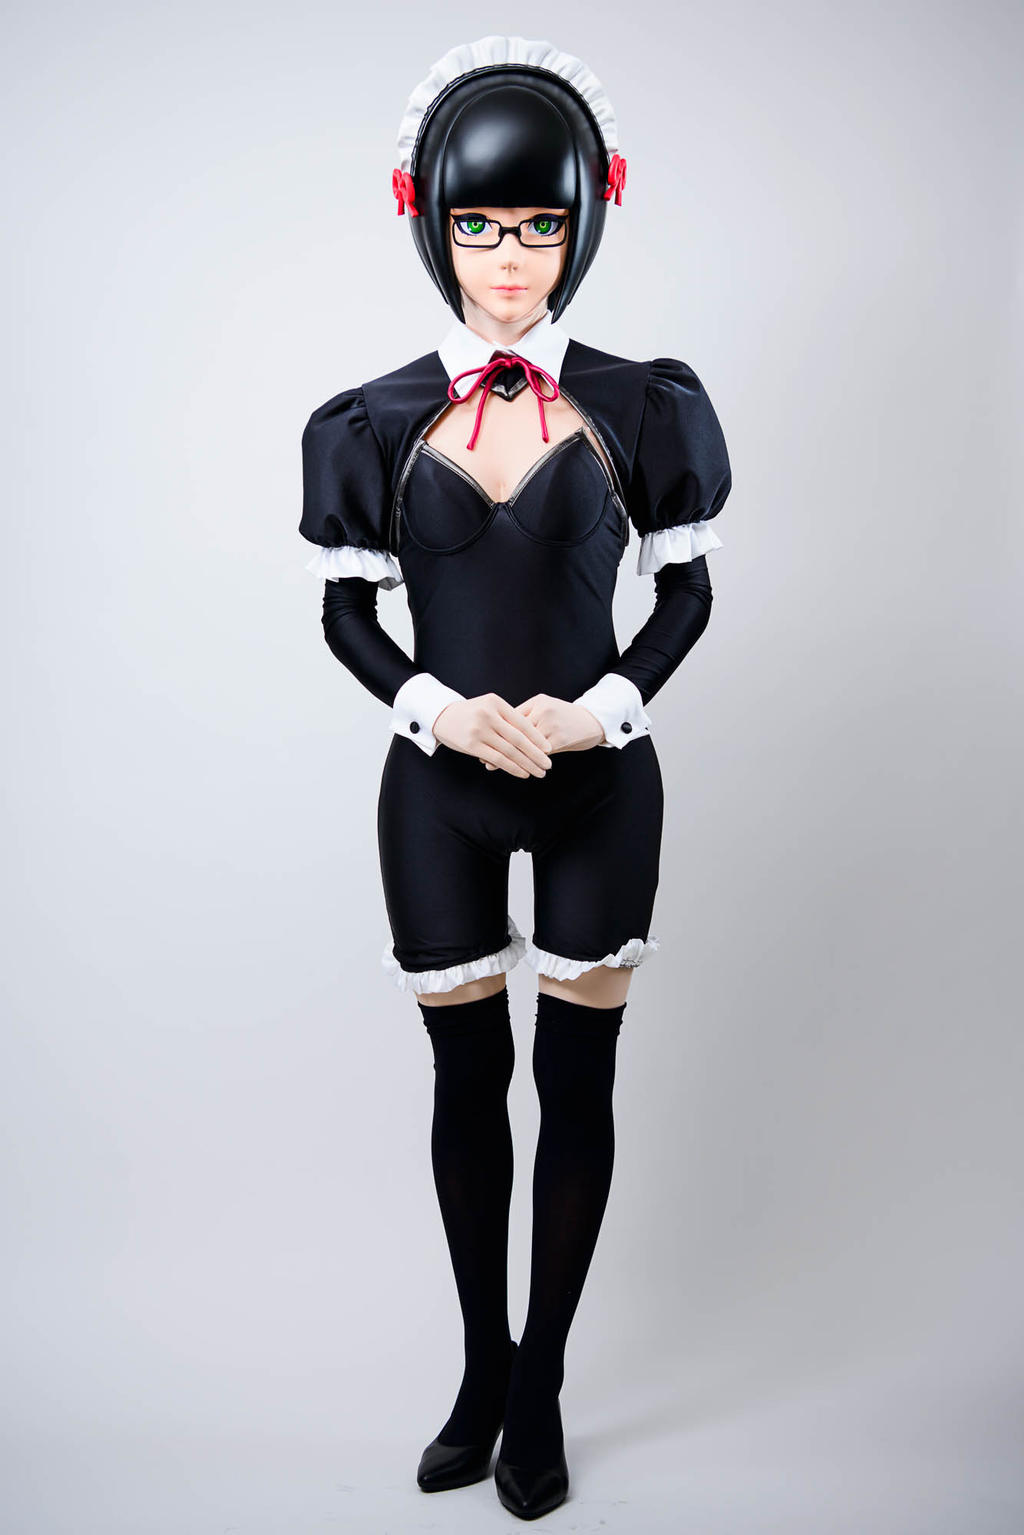 GITS SAC_2045 maid robot kigurumi cosplay by cocoa-box on DeviantArt